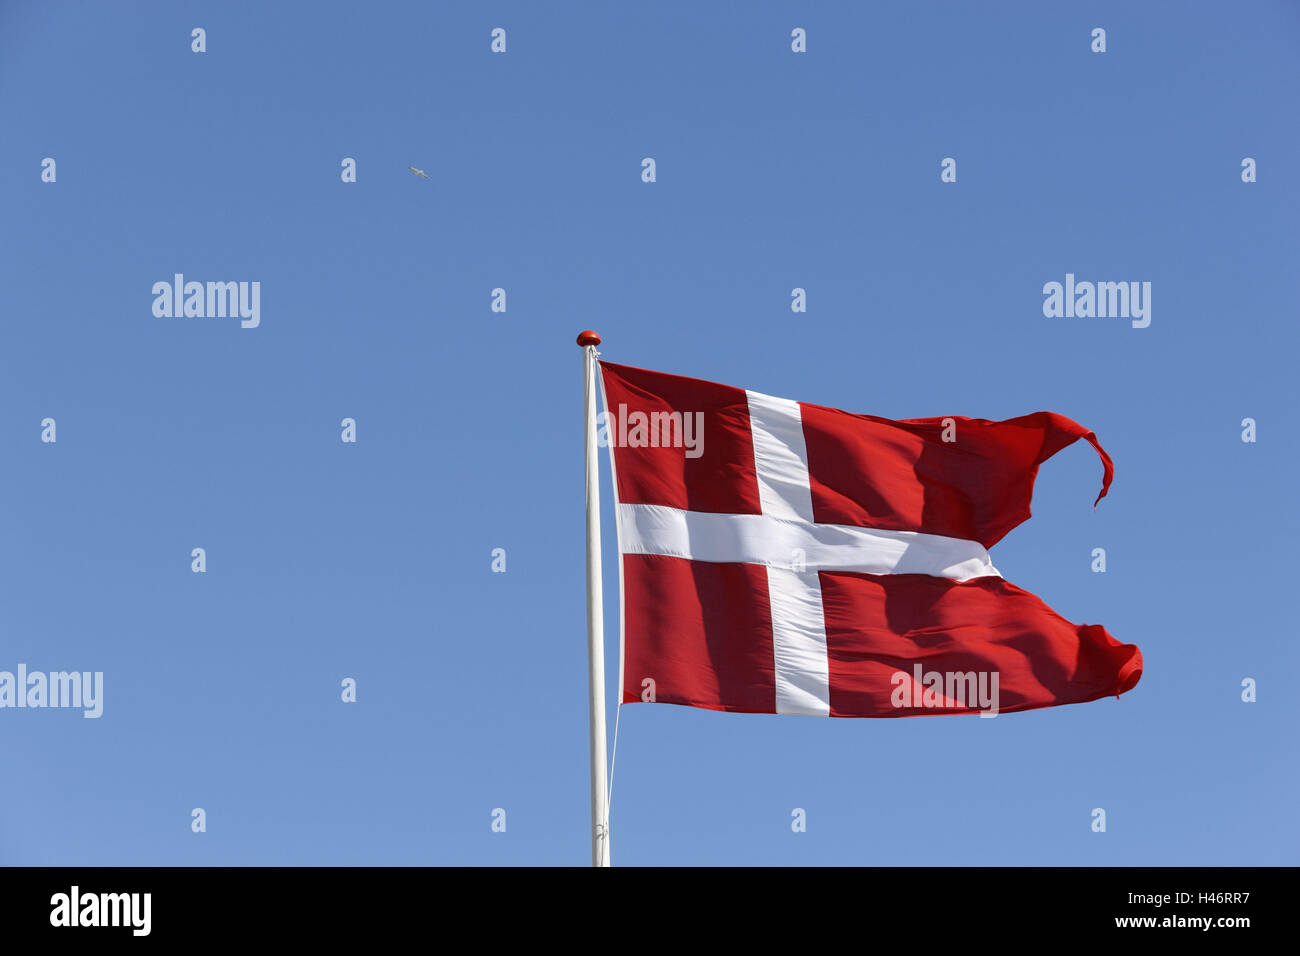 Denmark, flag, heaven, blue, national flag, flutter, blow, Jutland, ska gene, Stock Photo